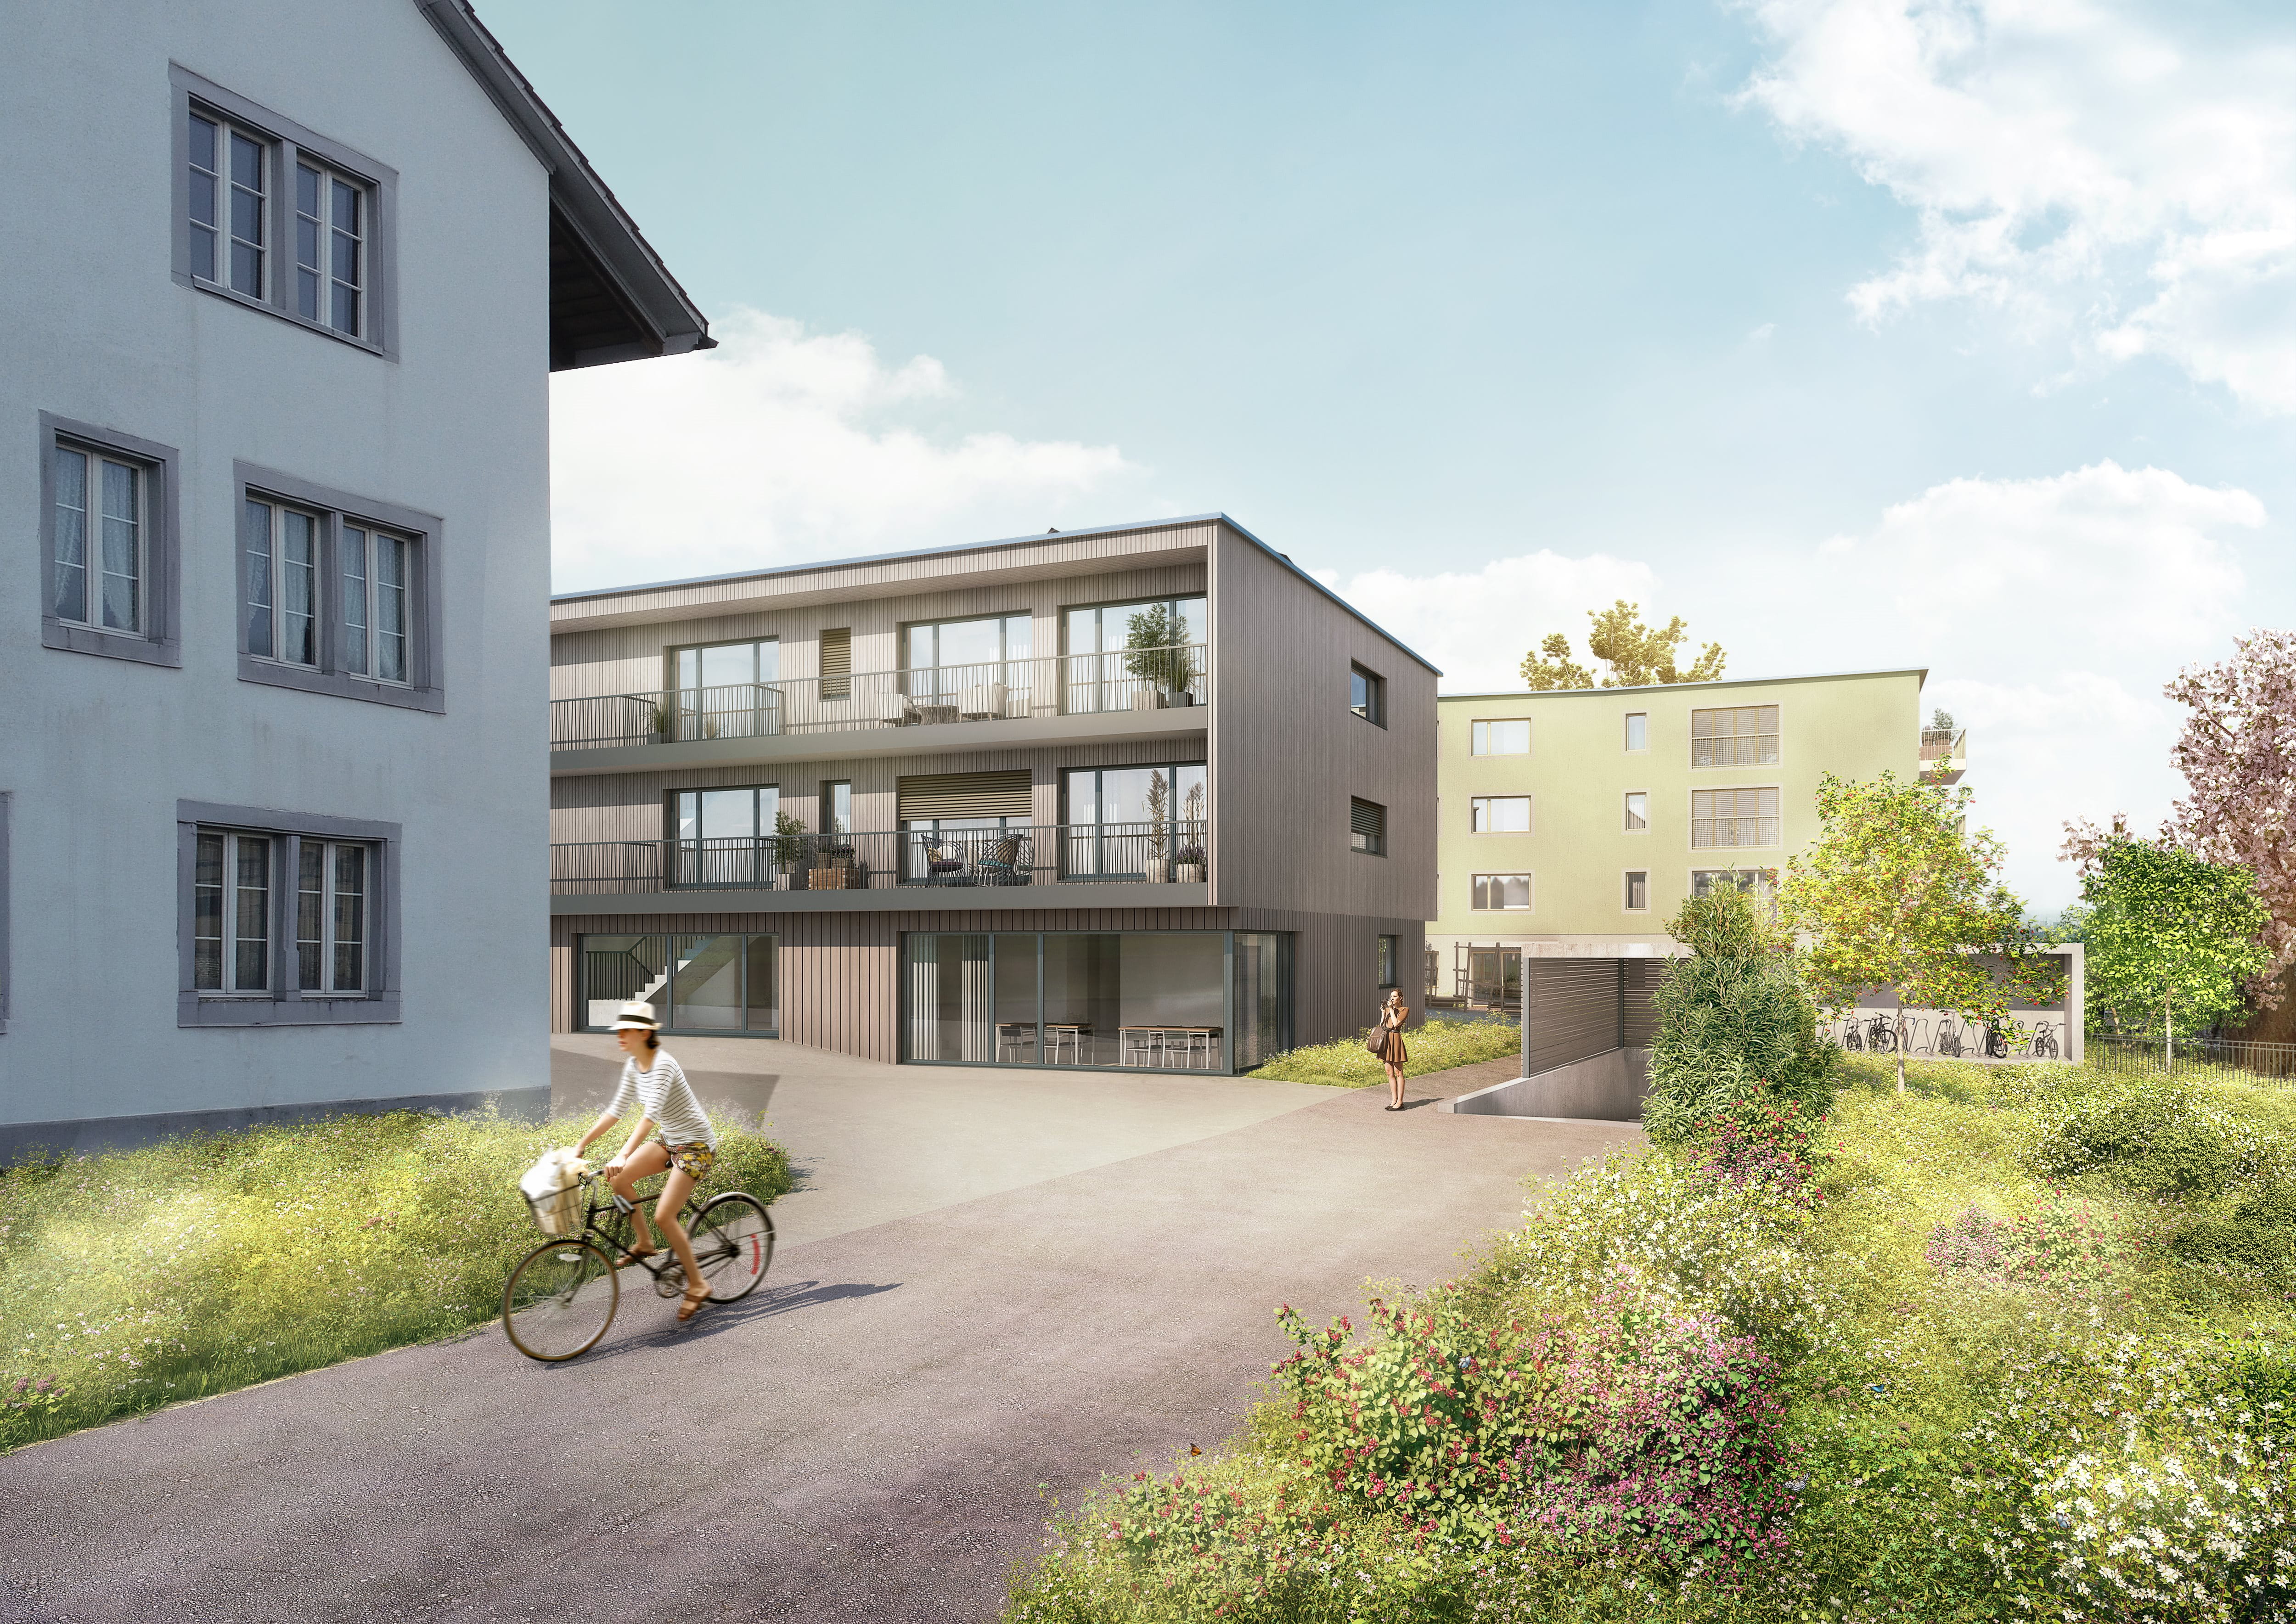 Wetzikon / In Wetzikon (ZH) investierten wir CHF 26 Millionen in drei Mehrfamilienhäuser mit 32 Wohnungen und geplantem Bezug im Oktober 2021. Betreiber: Wohnbaugenossenschaft DOMUM